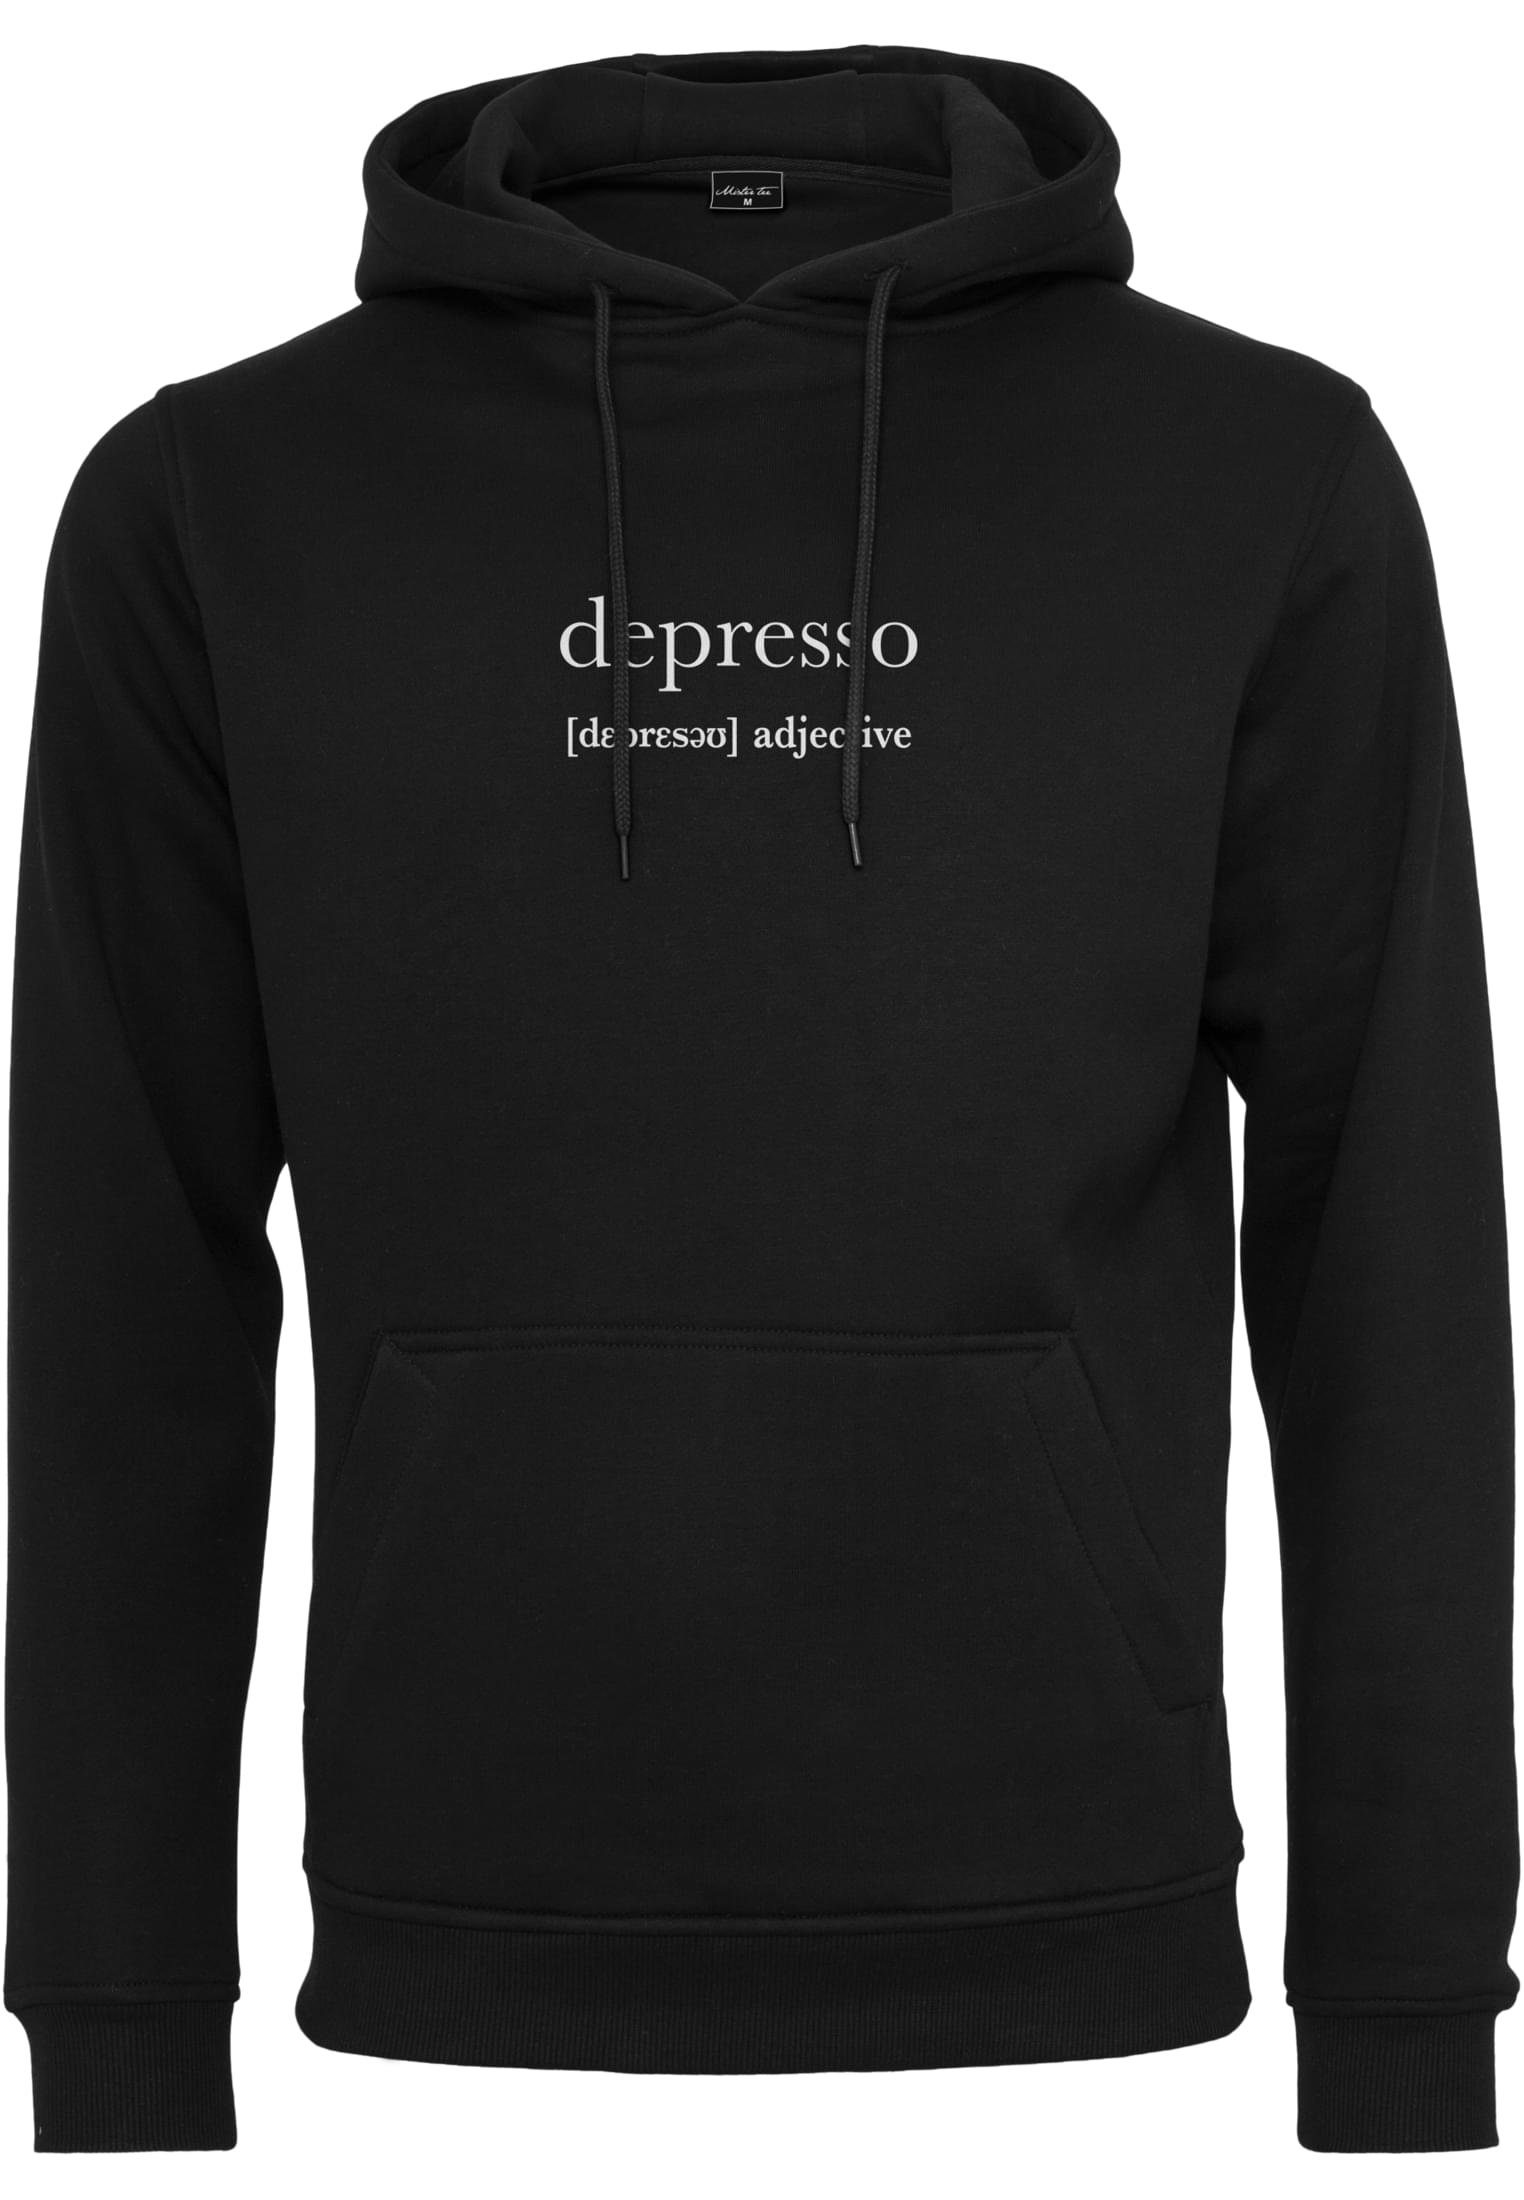 Sweater Hoody black MisterTee Herren (1-tlg) Depresso